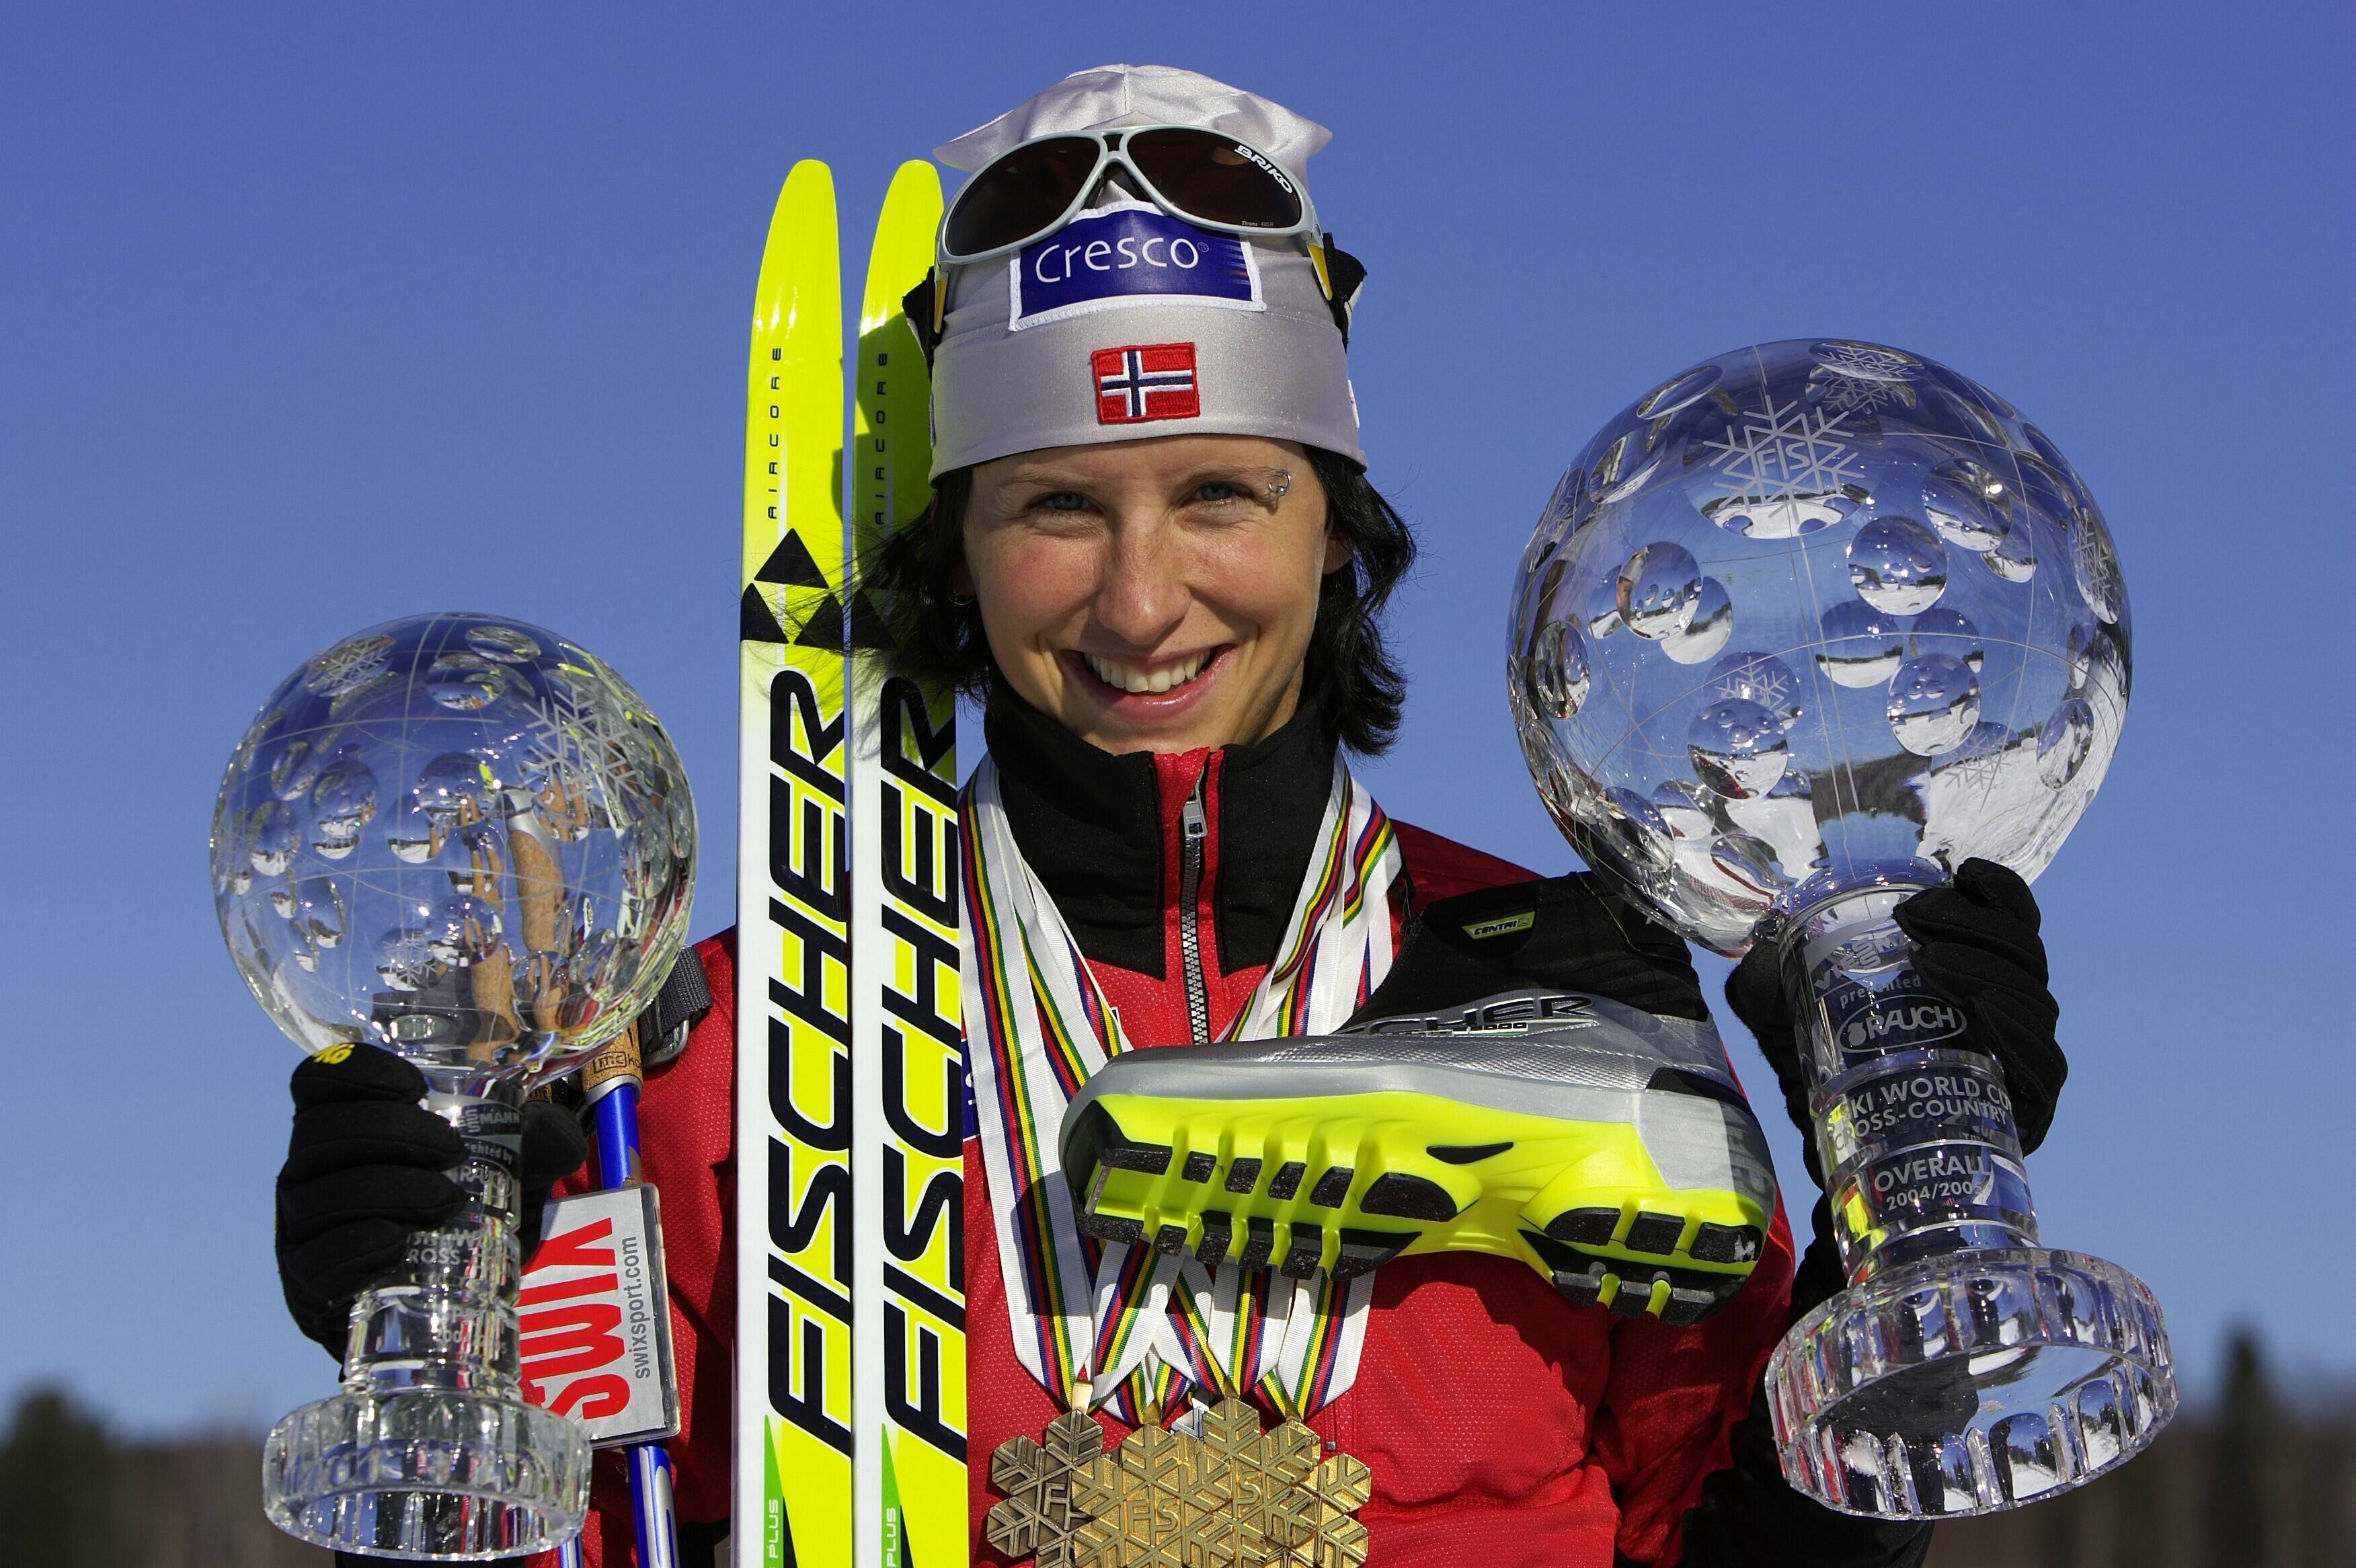 Звезда лыжных гонок норвежка Бьорген испугалась, что россияне могли подменить ее допинг-пробы